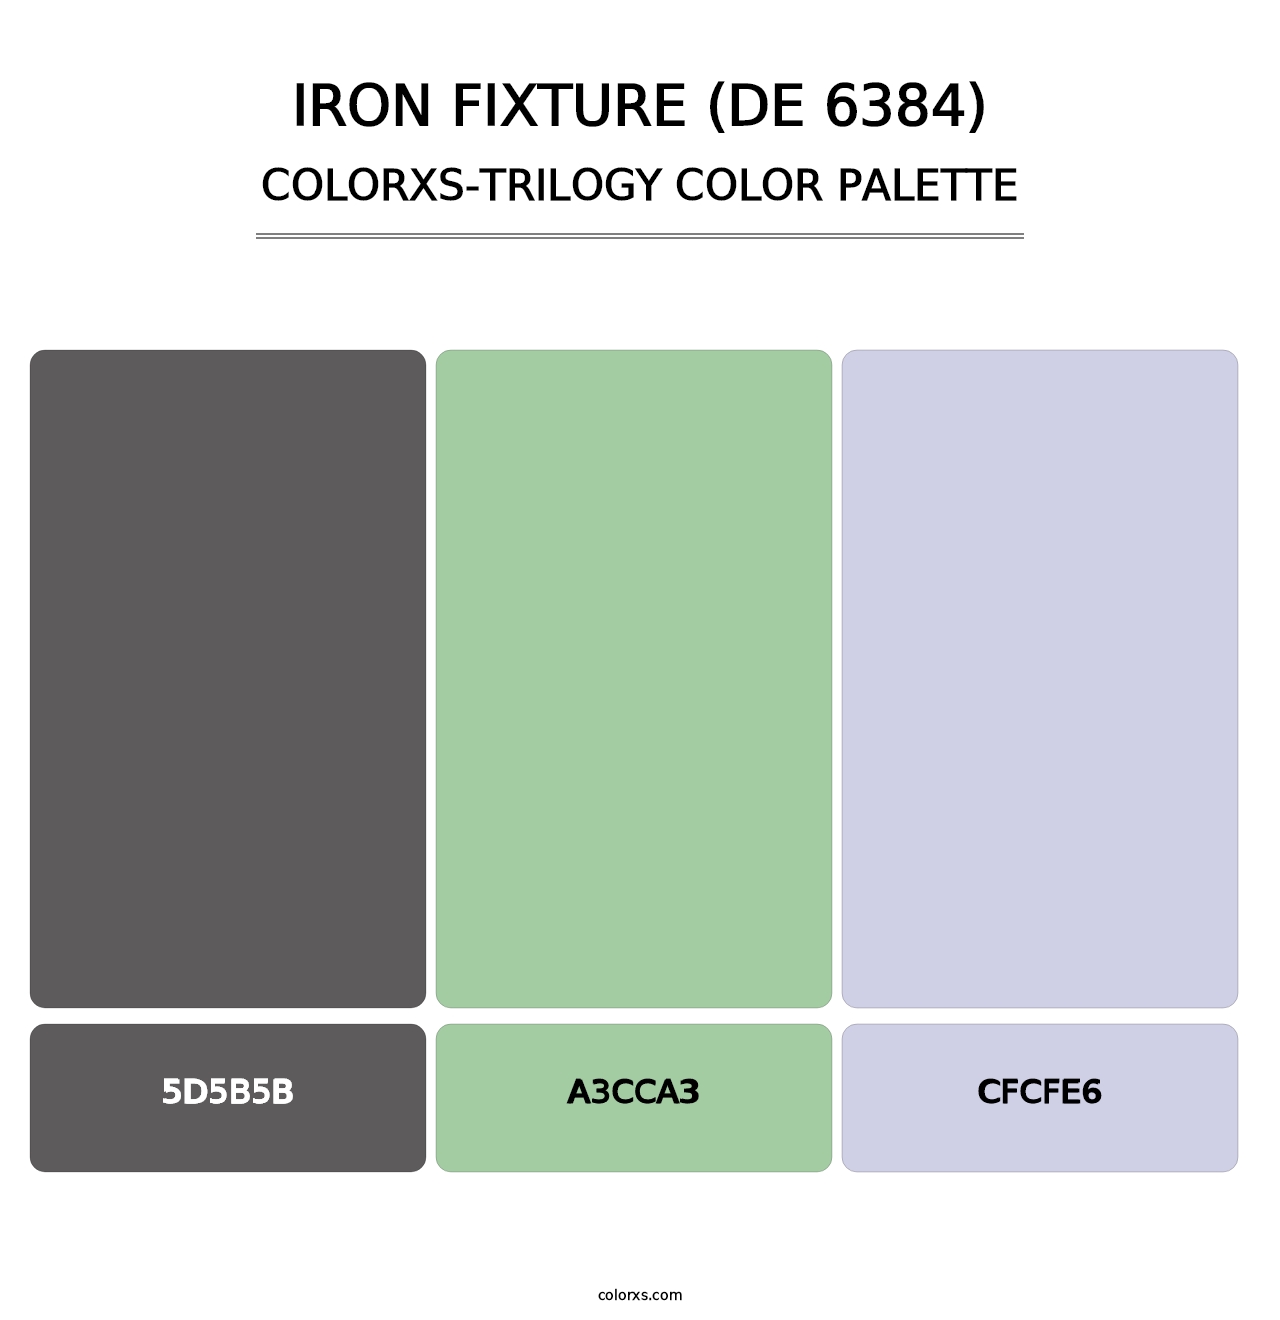 Iron Fixture (DE 6384) - Colorxs Trilogy Palette